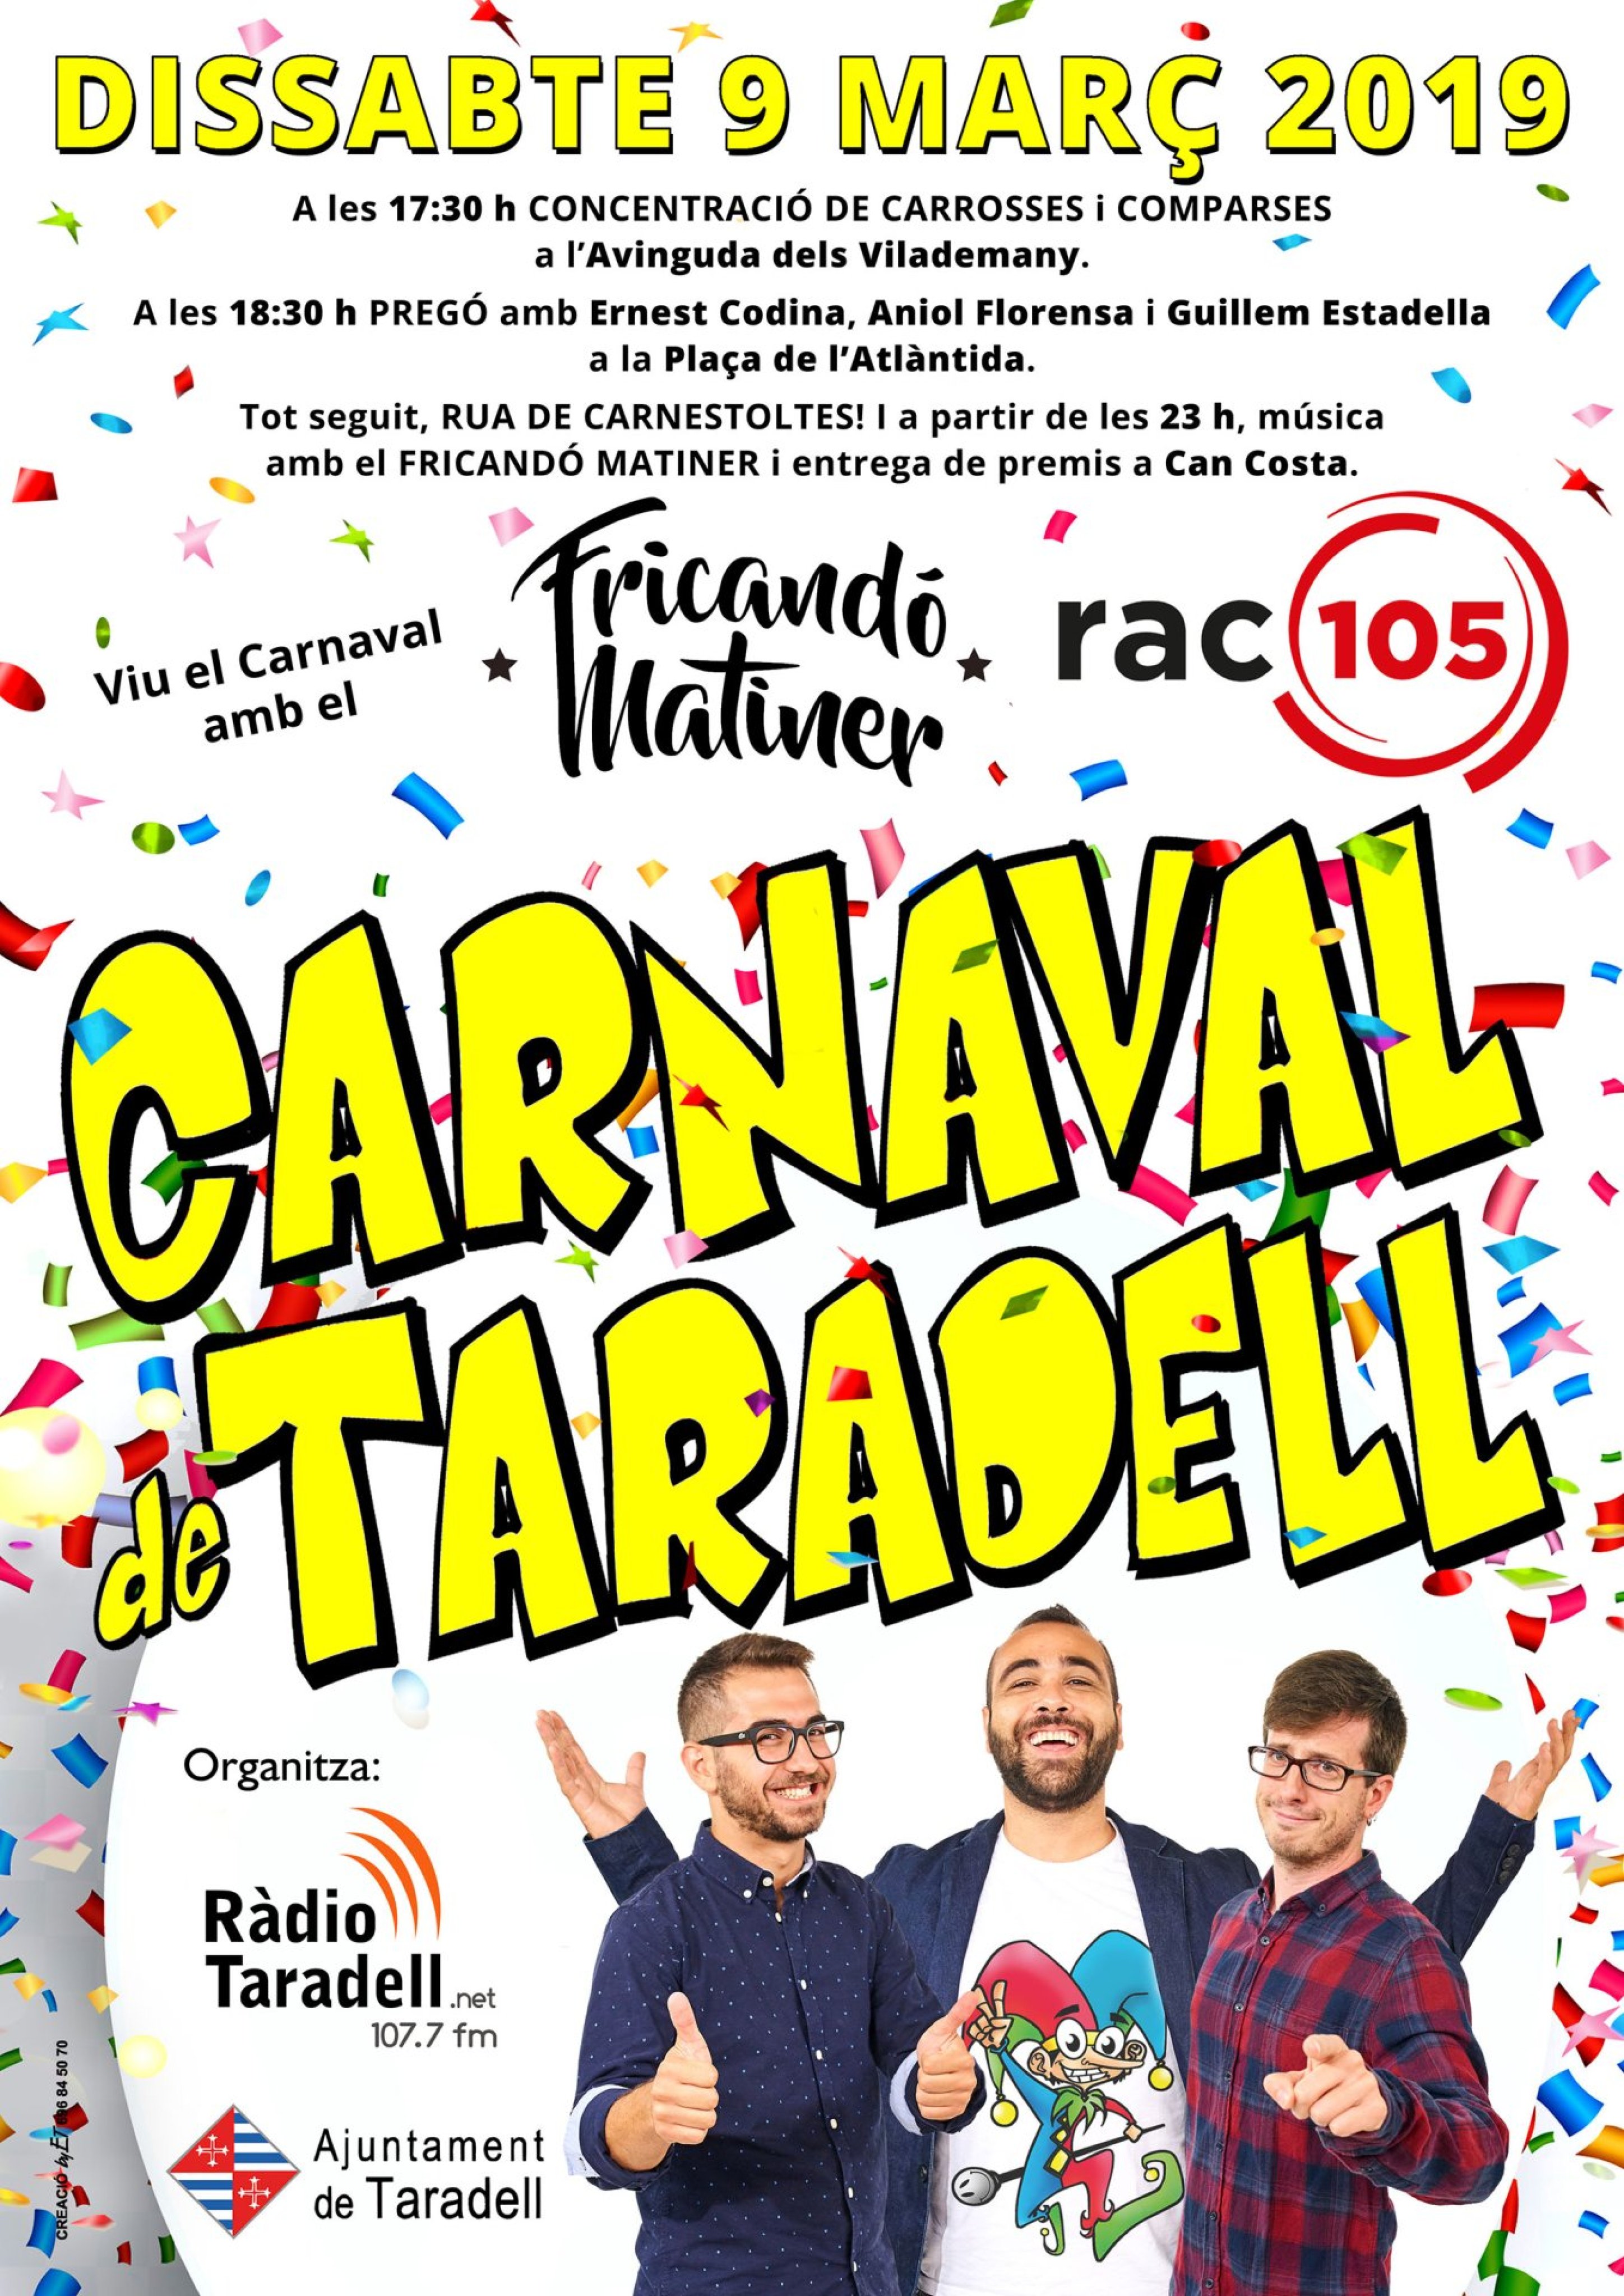 CARNAVAL-TARADELL-cartell-2019-definitiu.jpg